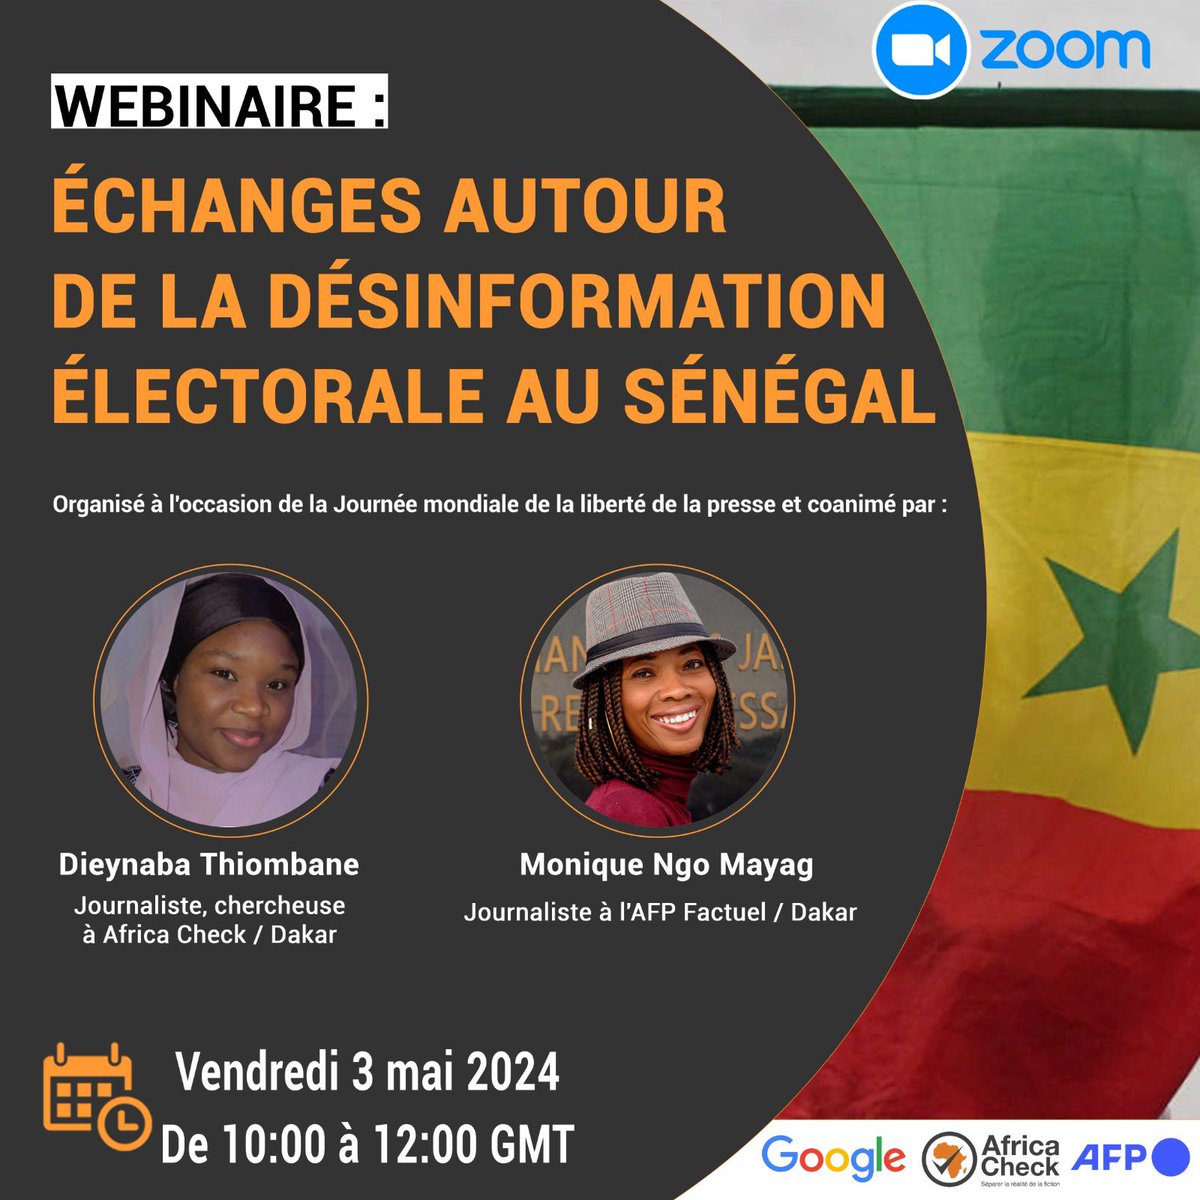 🔔 [RAPPEL] | Inscrivez-vous par ici pour suivre demain le webinaire sur la désinformation électorale au Sénégal : africacheck.info/3QljxuQ

📆Date : vendredi 03 mai 2024
🕒Heure : de 10:00 à 12H00 GMT+0 (Heure de Dakar) 

@AfpFactuel & @Google